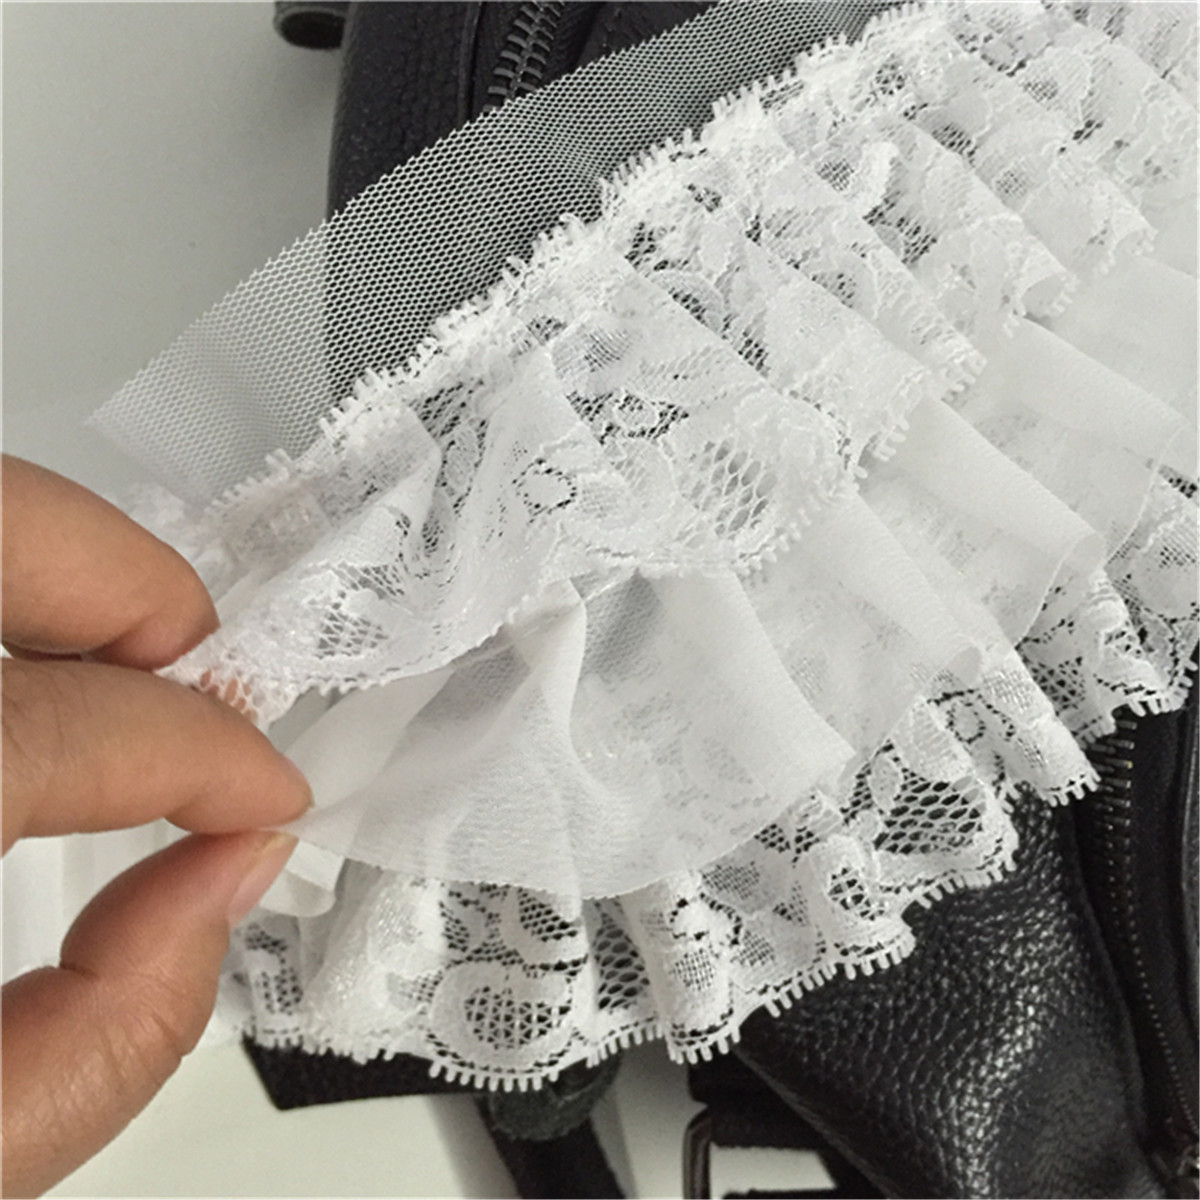 3 Layer Chiffon Ruffle Lace Trim Pleat Ribbon Dress Hemline Edge Fabric Sewing Ebay 8910